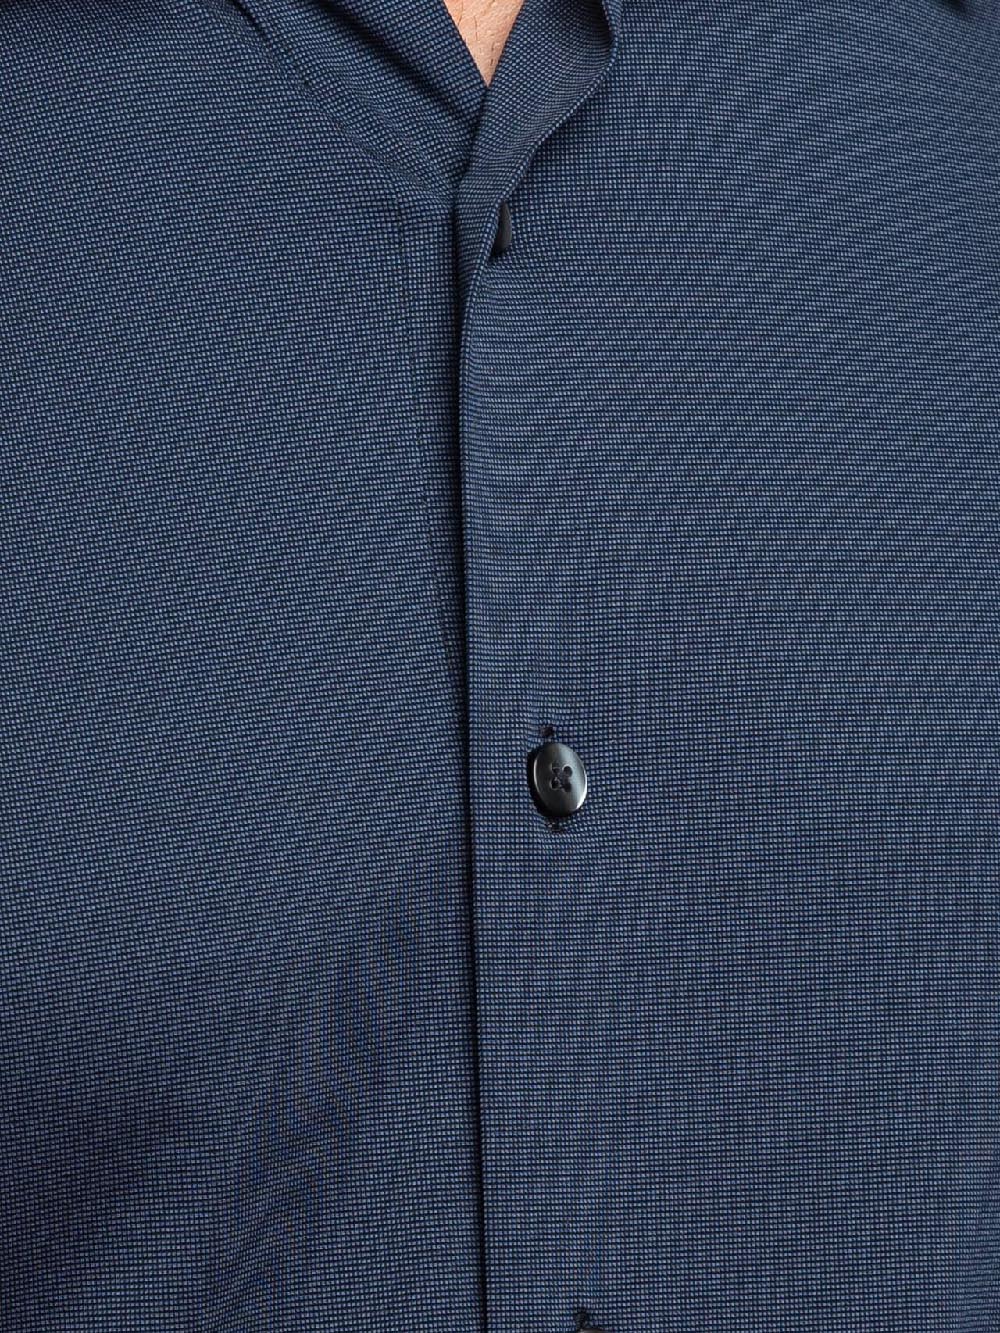 RRD Roberto Ricci Designs Camicia Uomo Blu